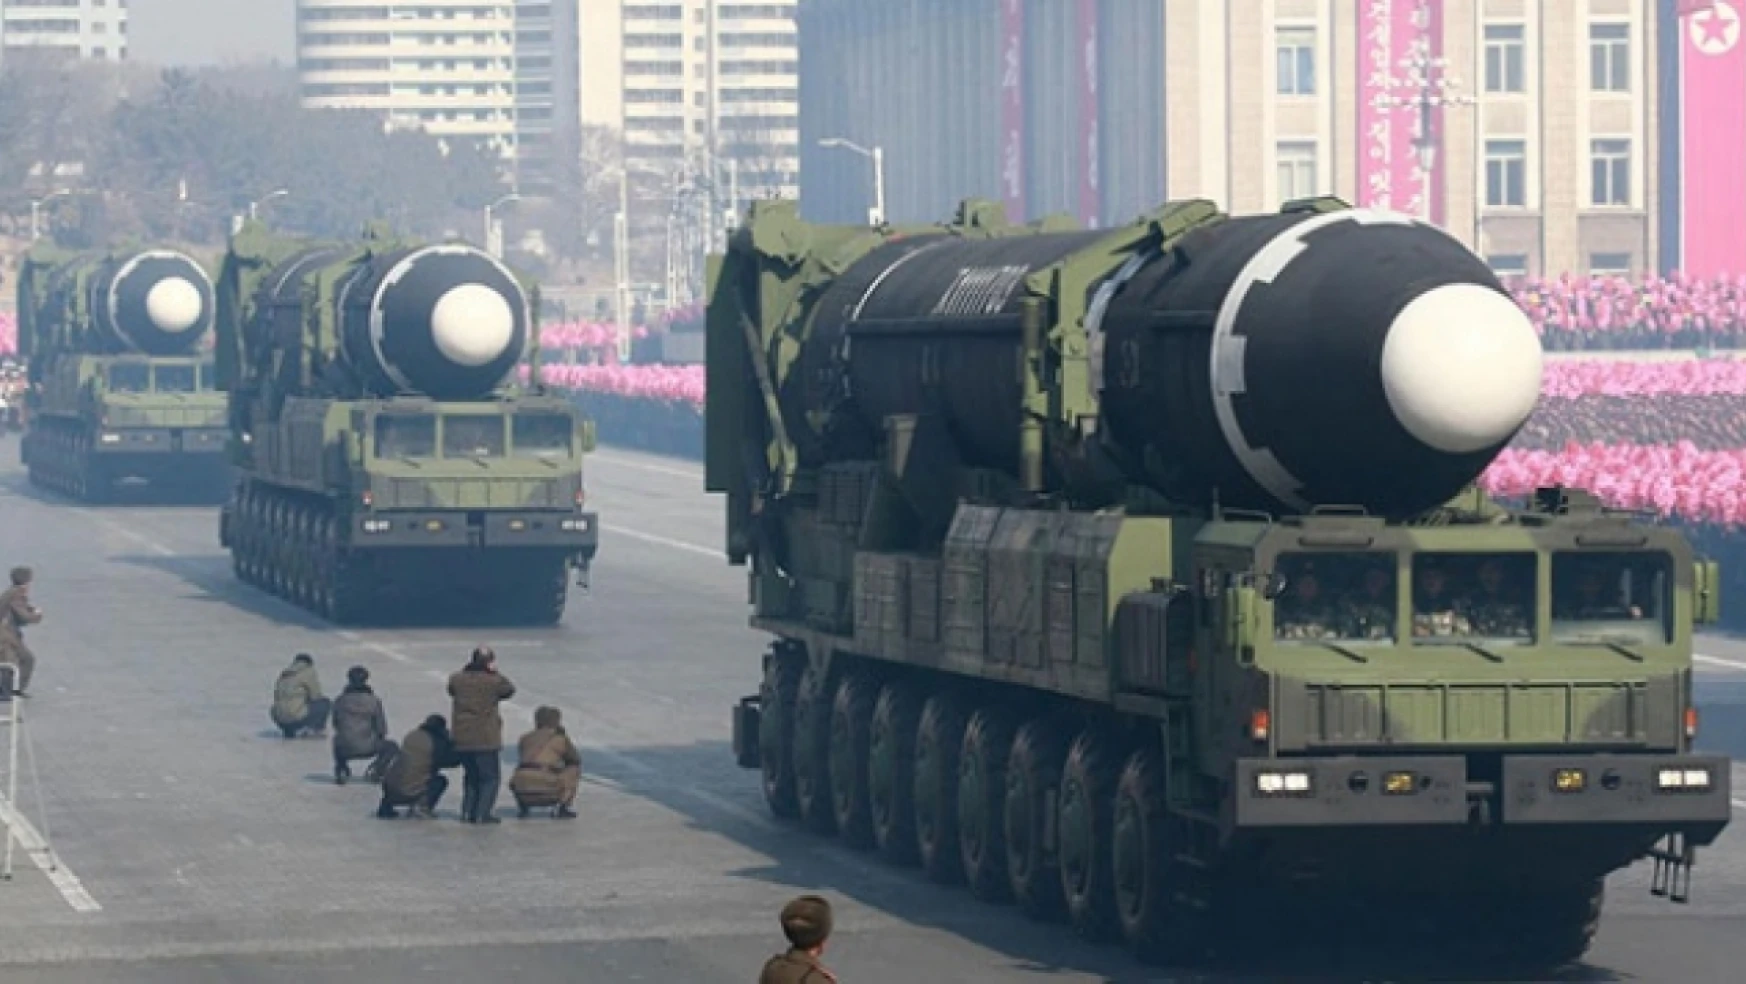 Batı bin yıl kabul etmese de Kuzey Kore nükleer silah devleti olarak kalacak